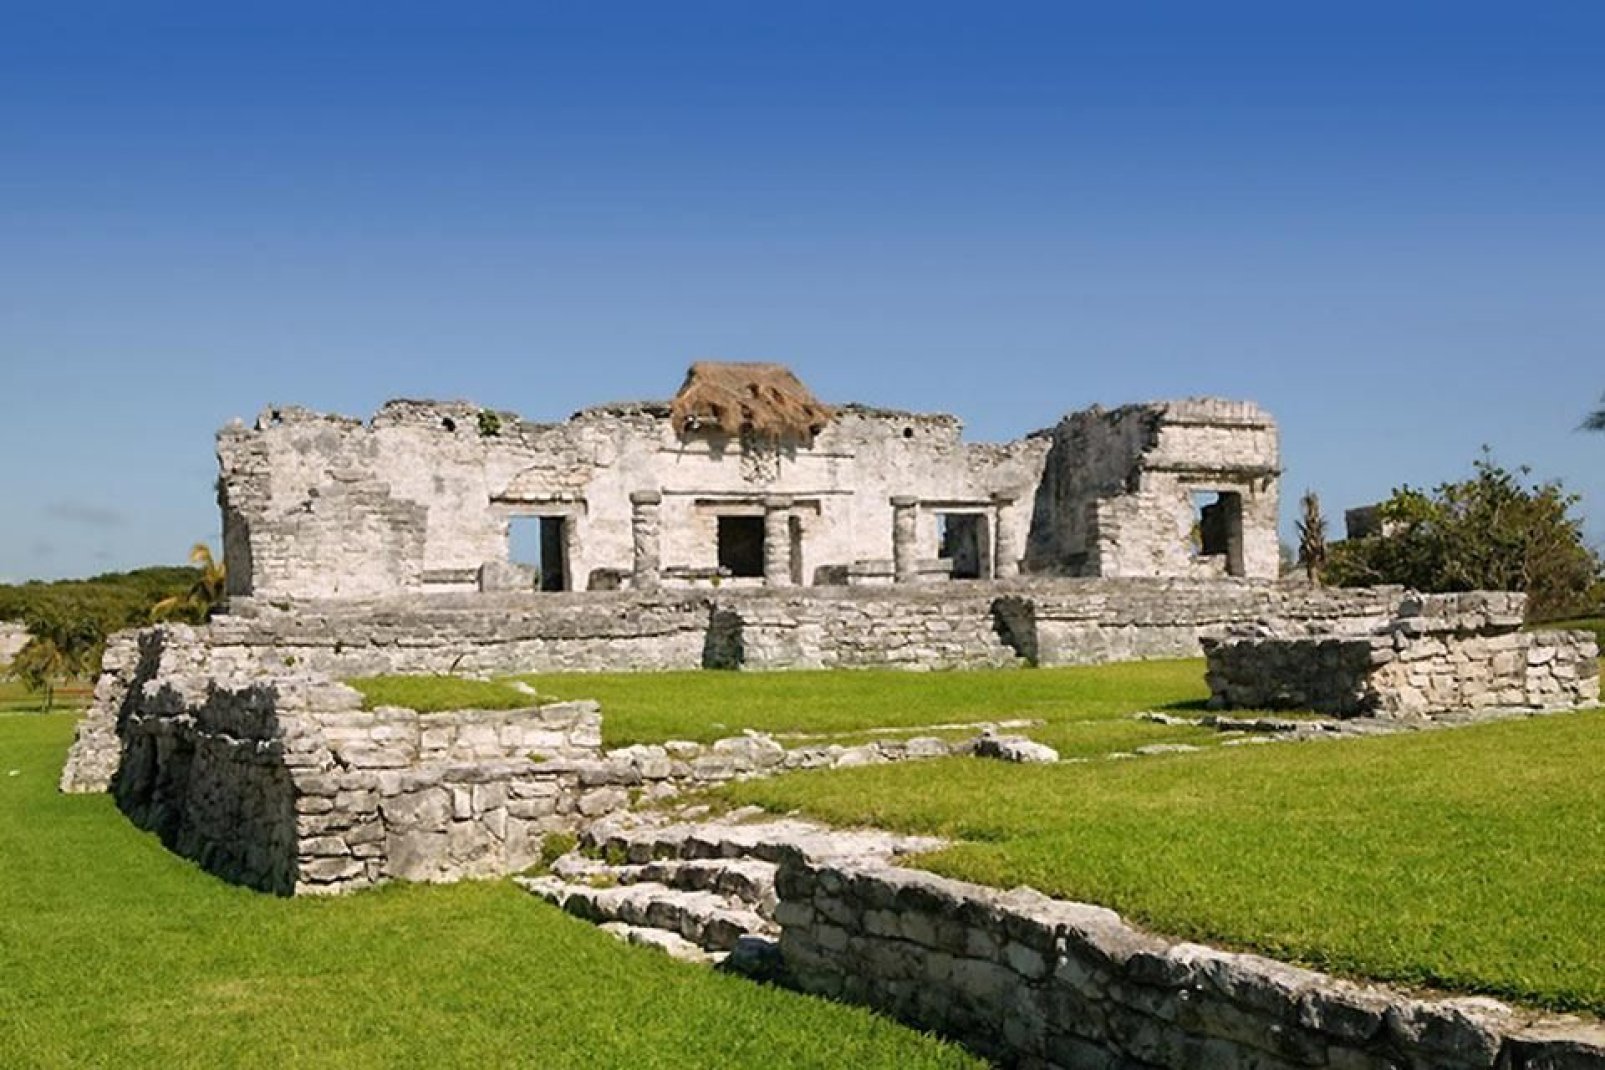 Il principale sito archeologico di Tulum è El Castillo.